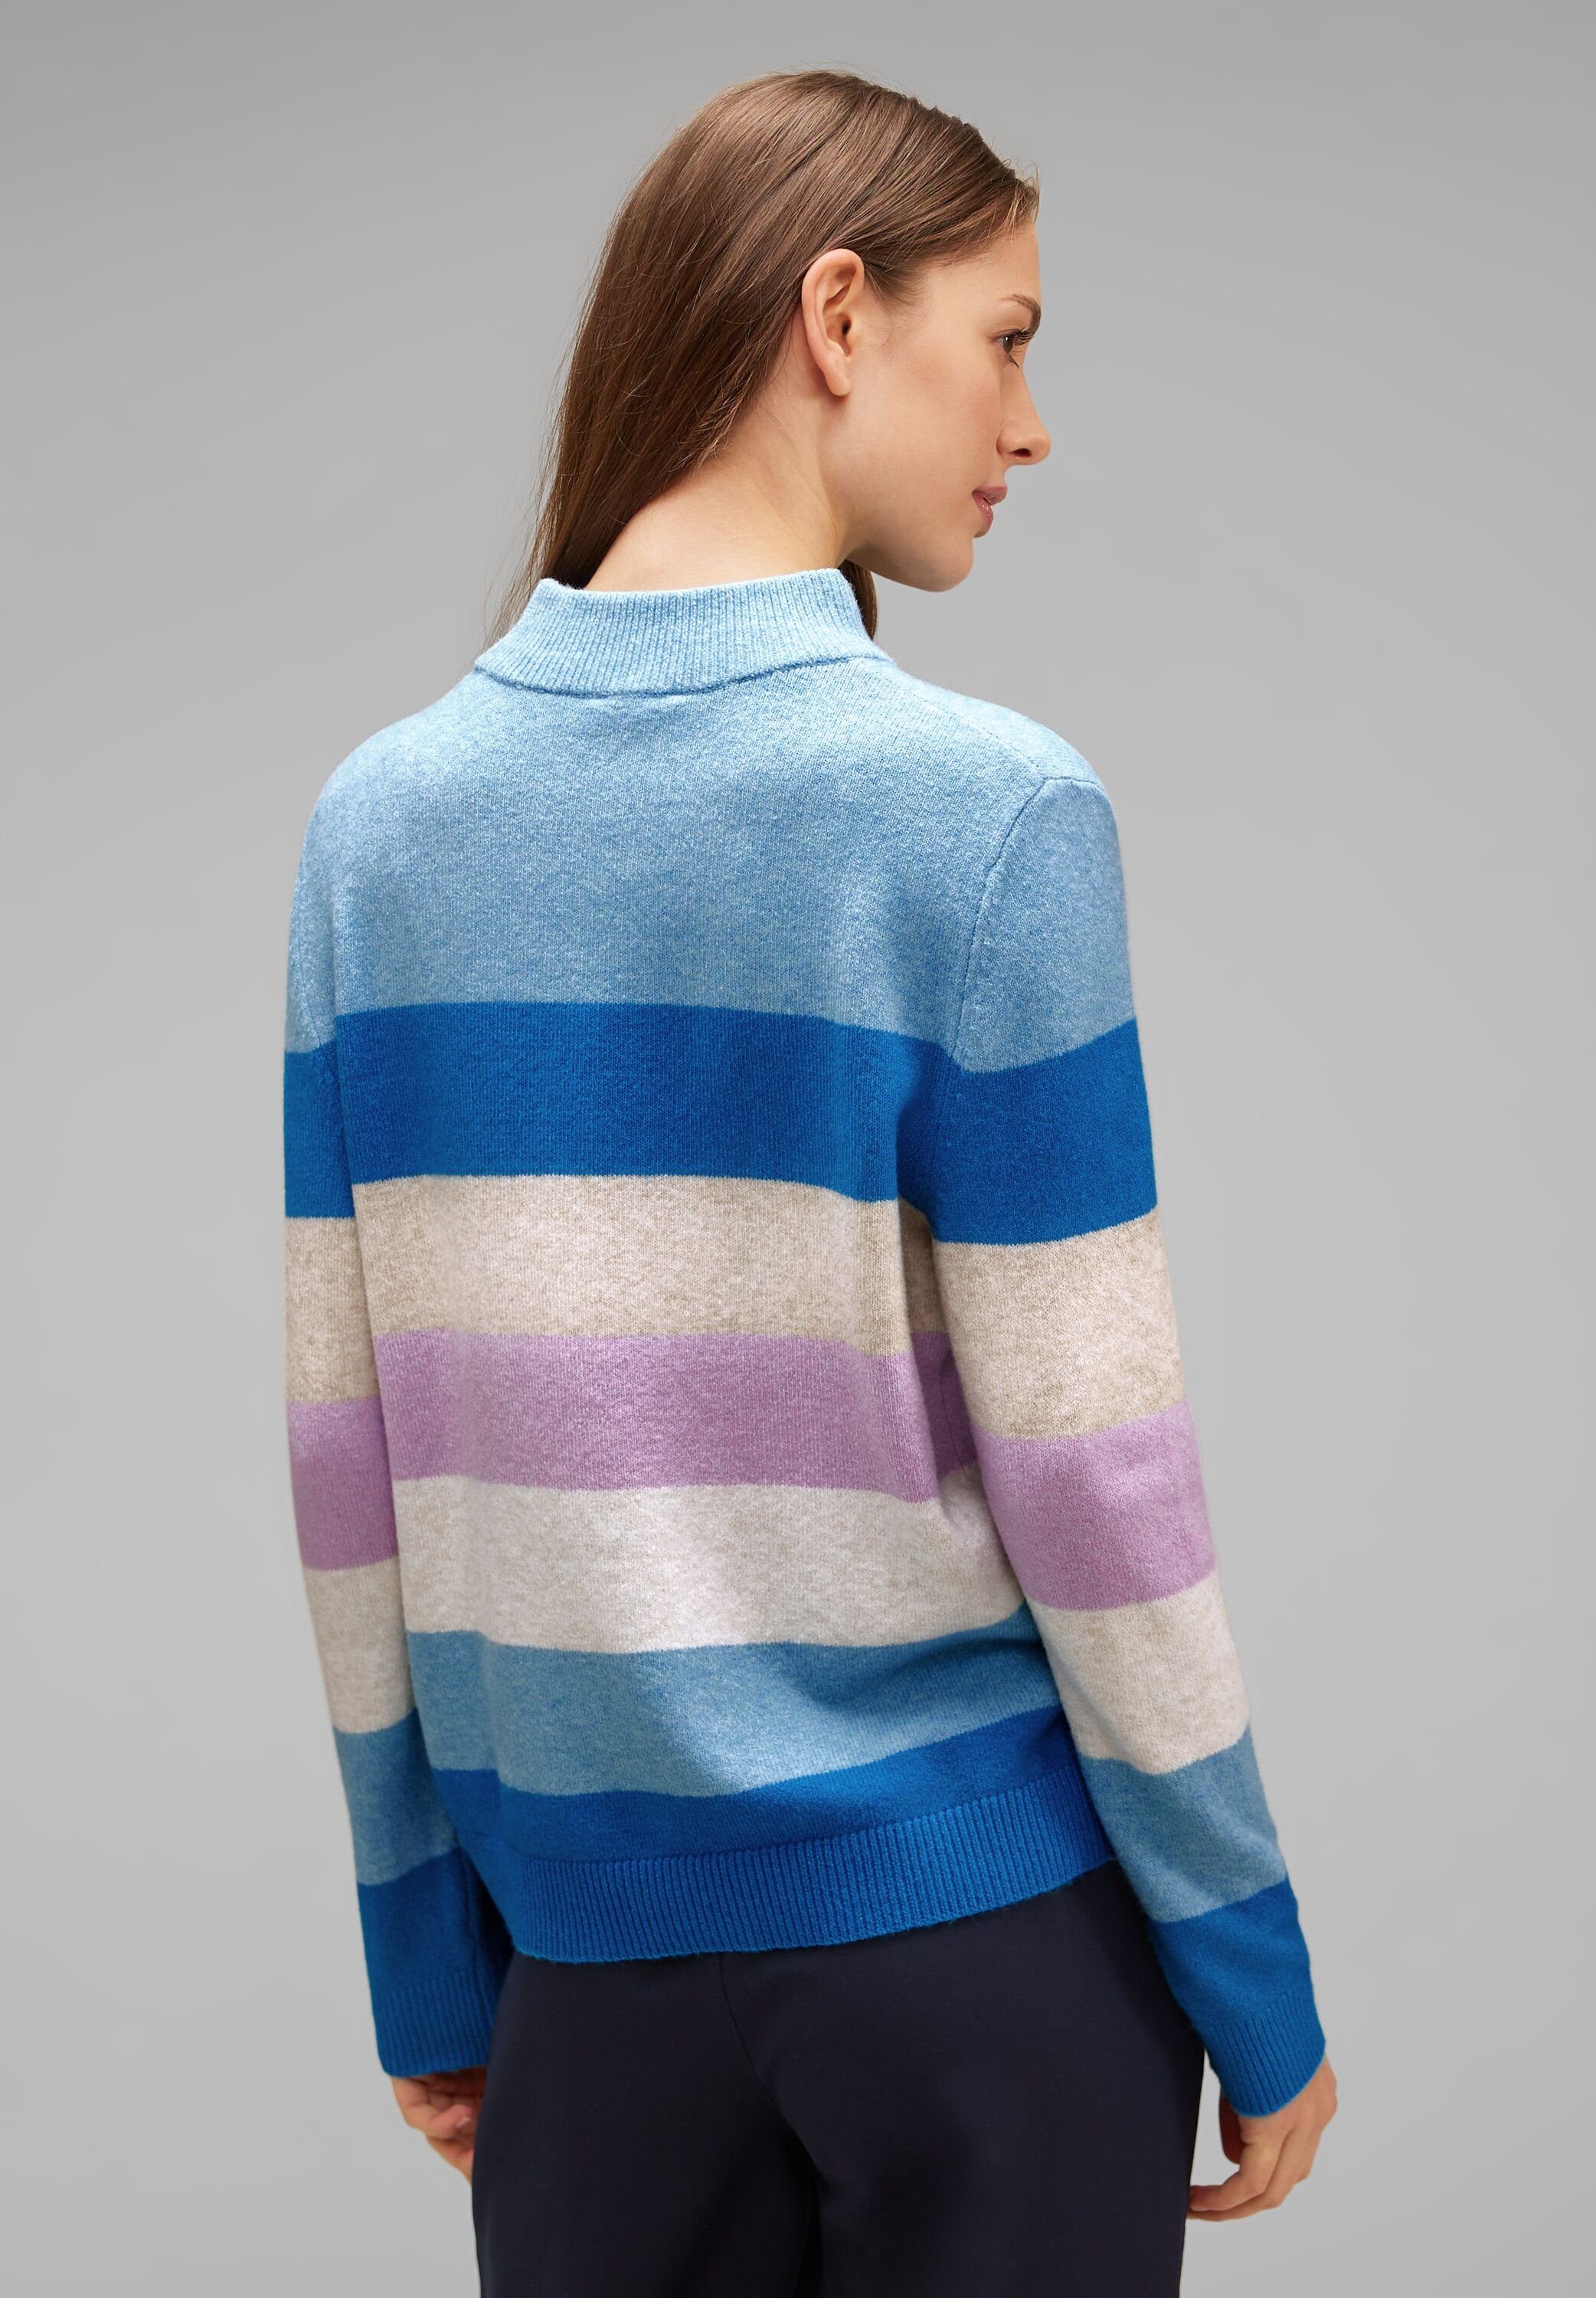 Pullover Mehrfarbig Streifenmuster STREET Strickpullover gestreift aquamarine light blue ONE mit mel.